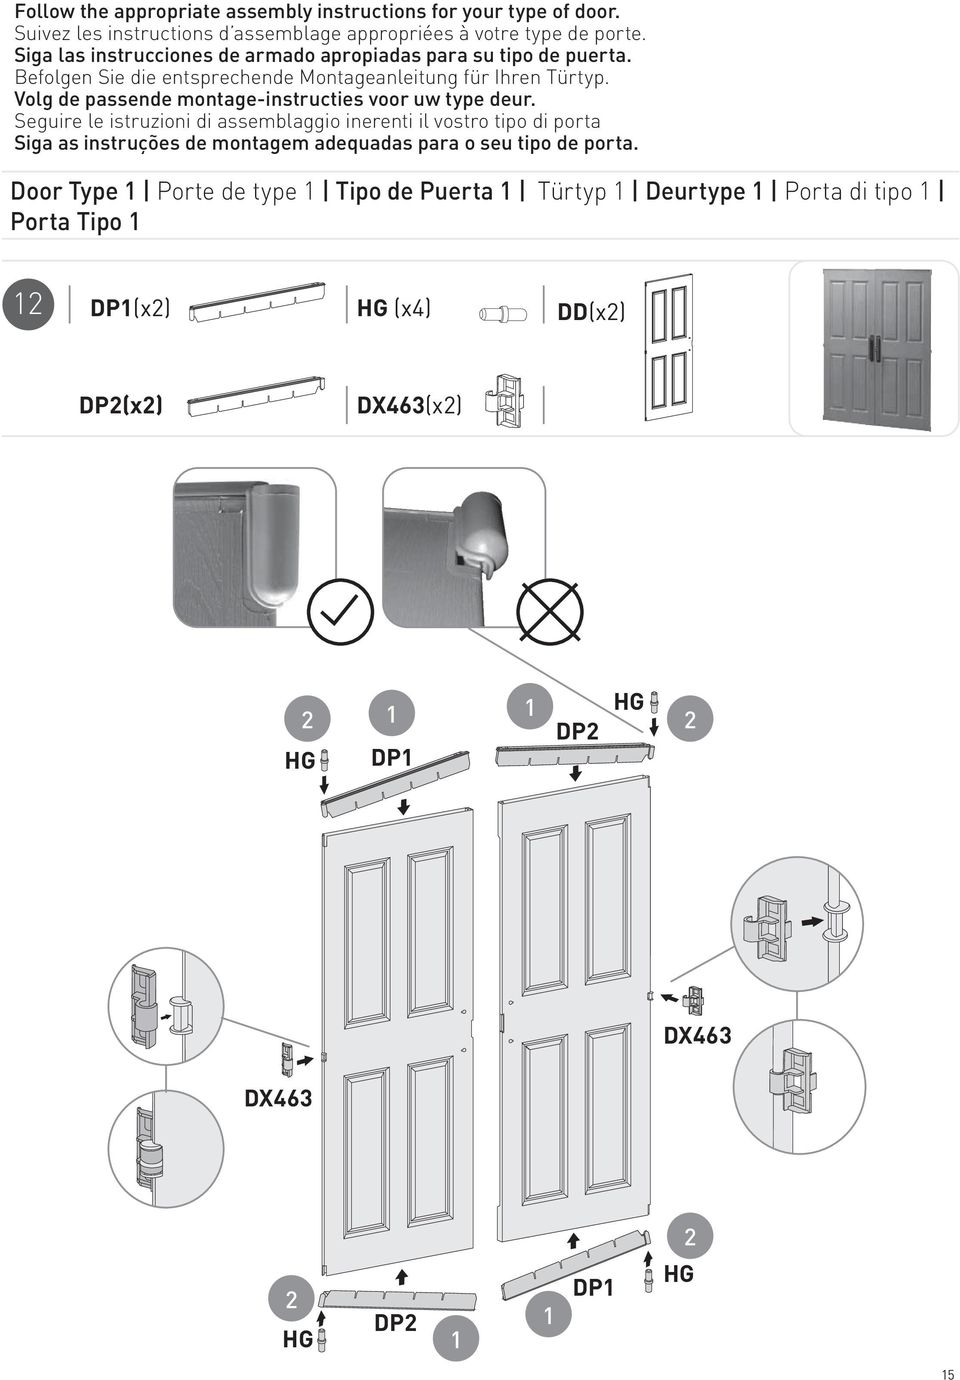 Volg de passende montage-instructies voor uw type deur.